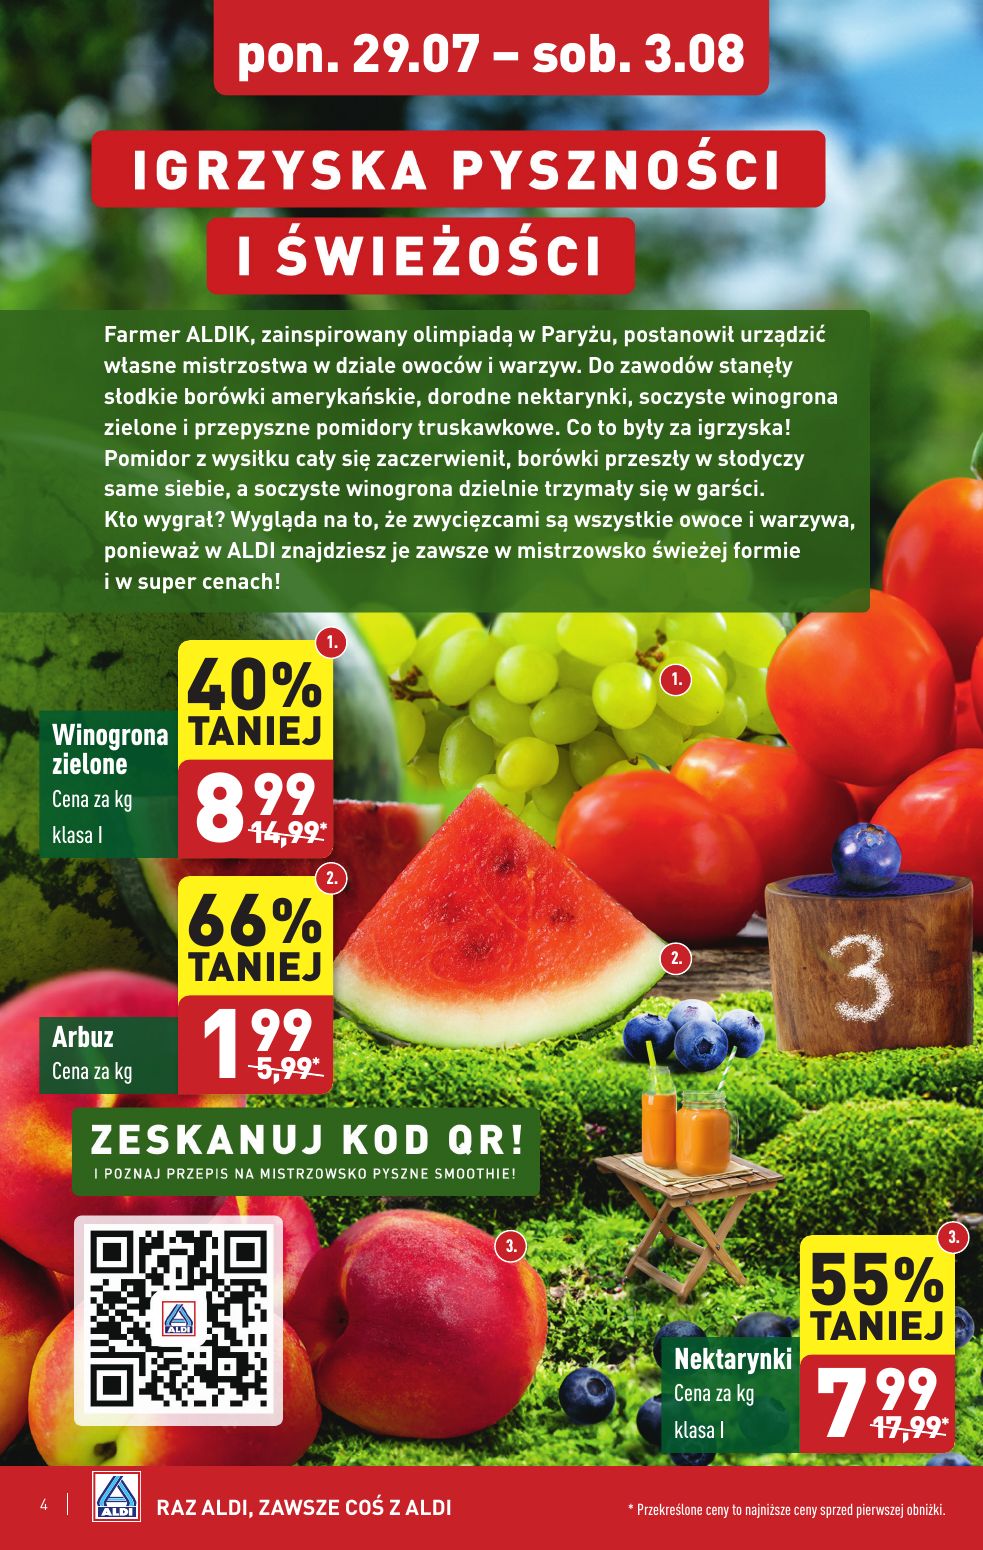 gazetka promocyjna ALDI Farmer Aldik poleca świeże owoce i warzywa - Strona 4